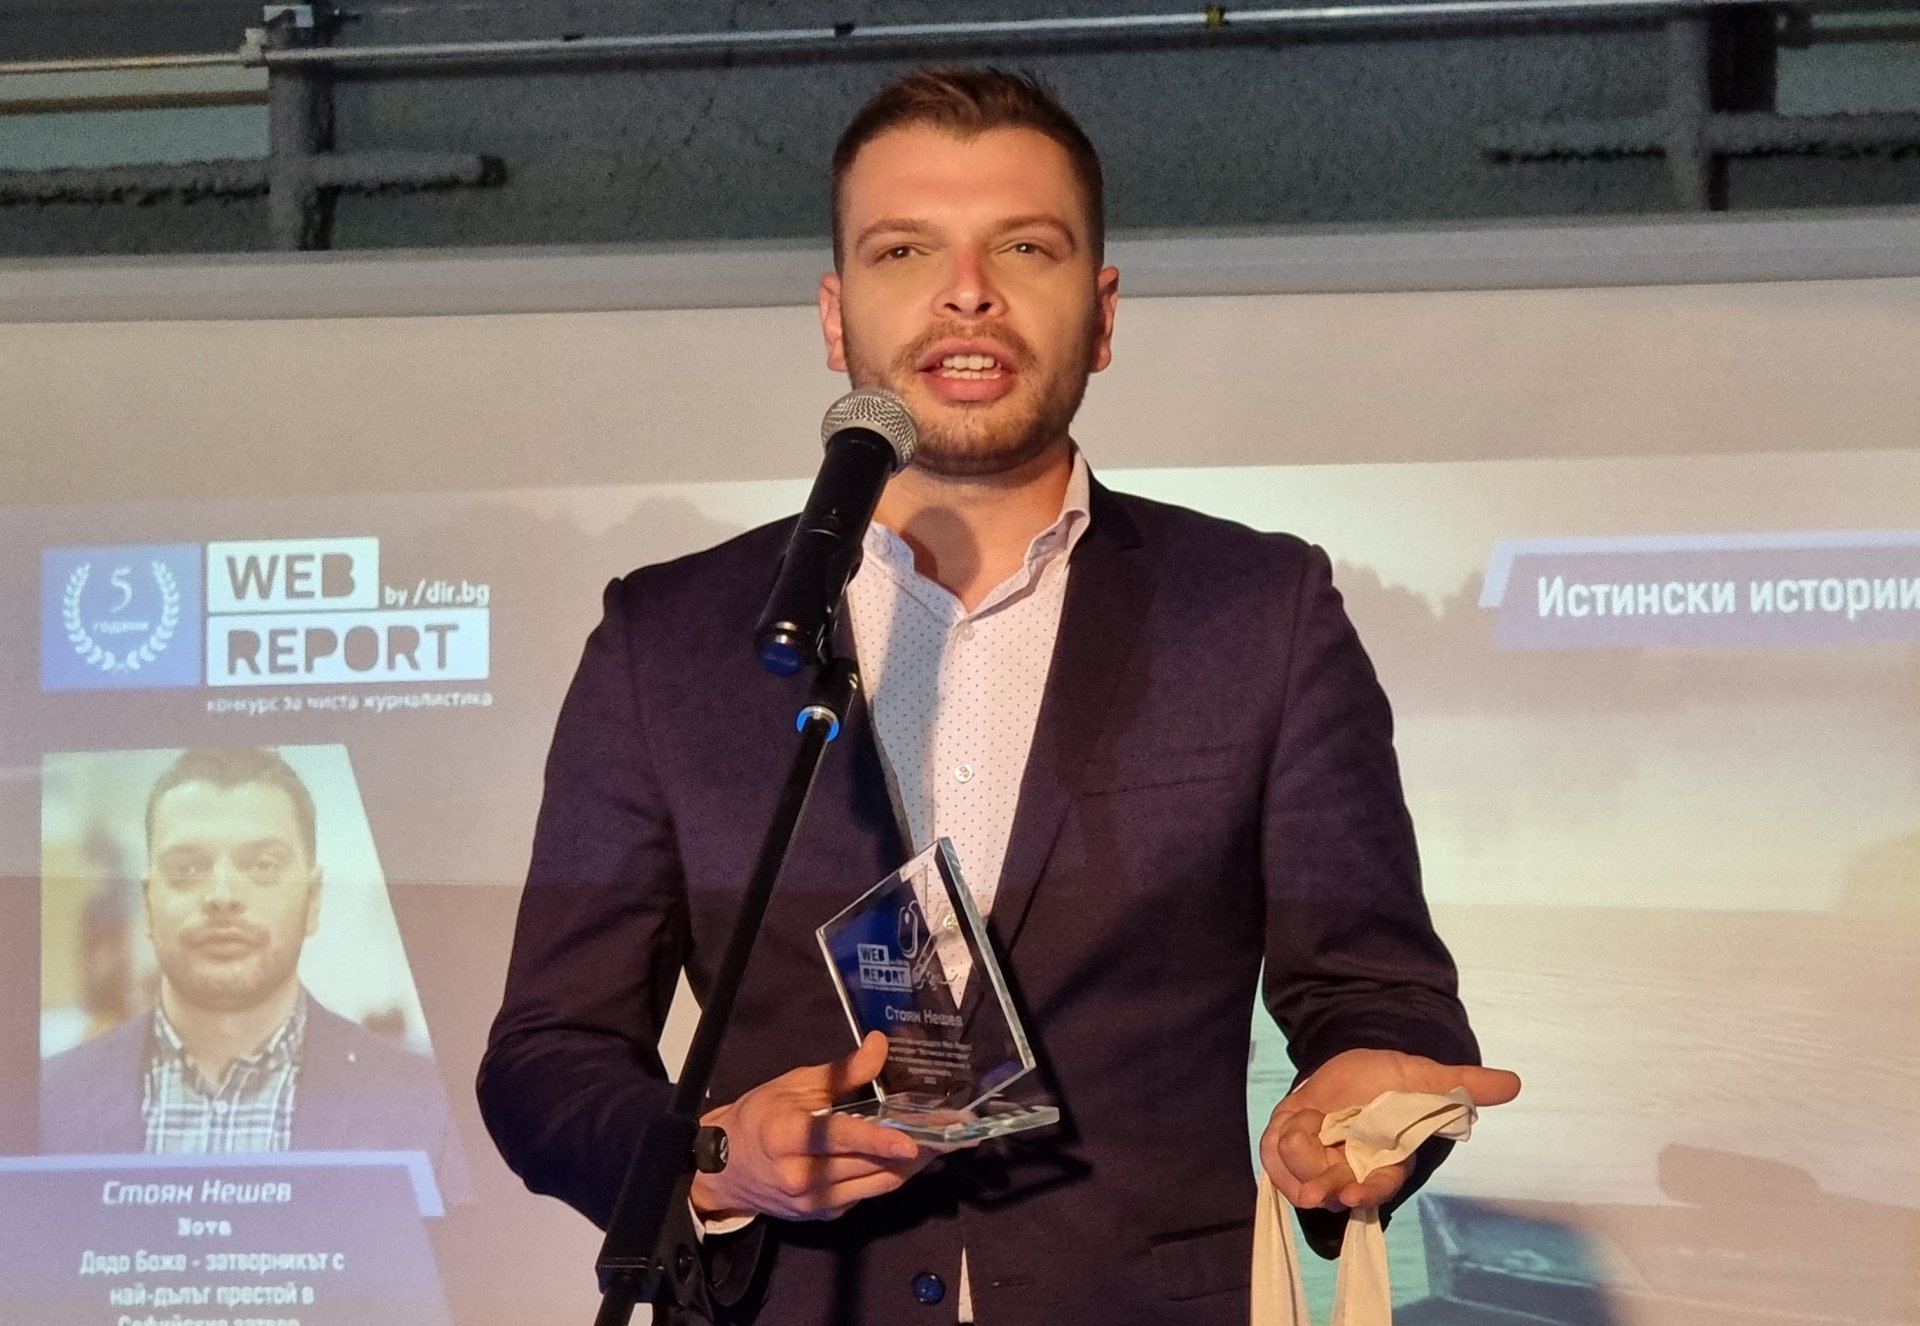 Стоян Нешев е победителят в категория "Истински истории" на Web Report 2022.